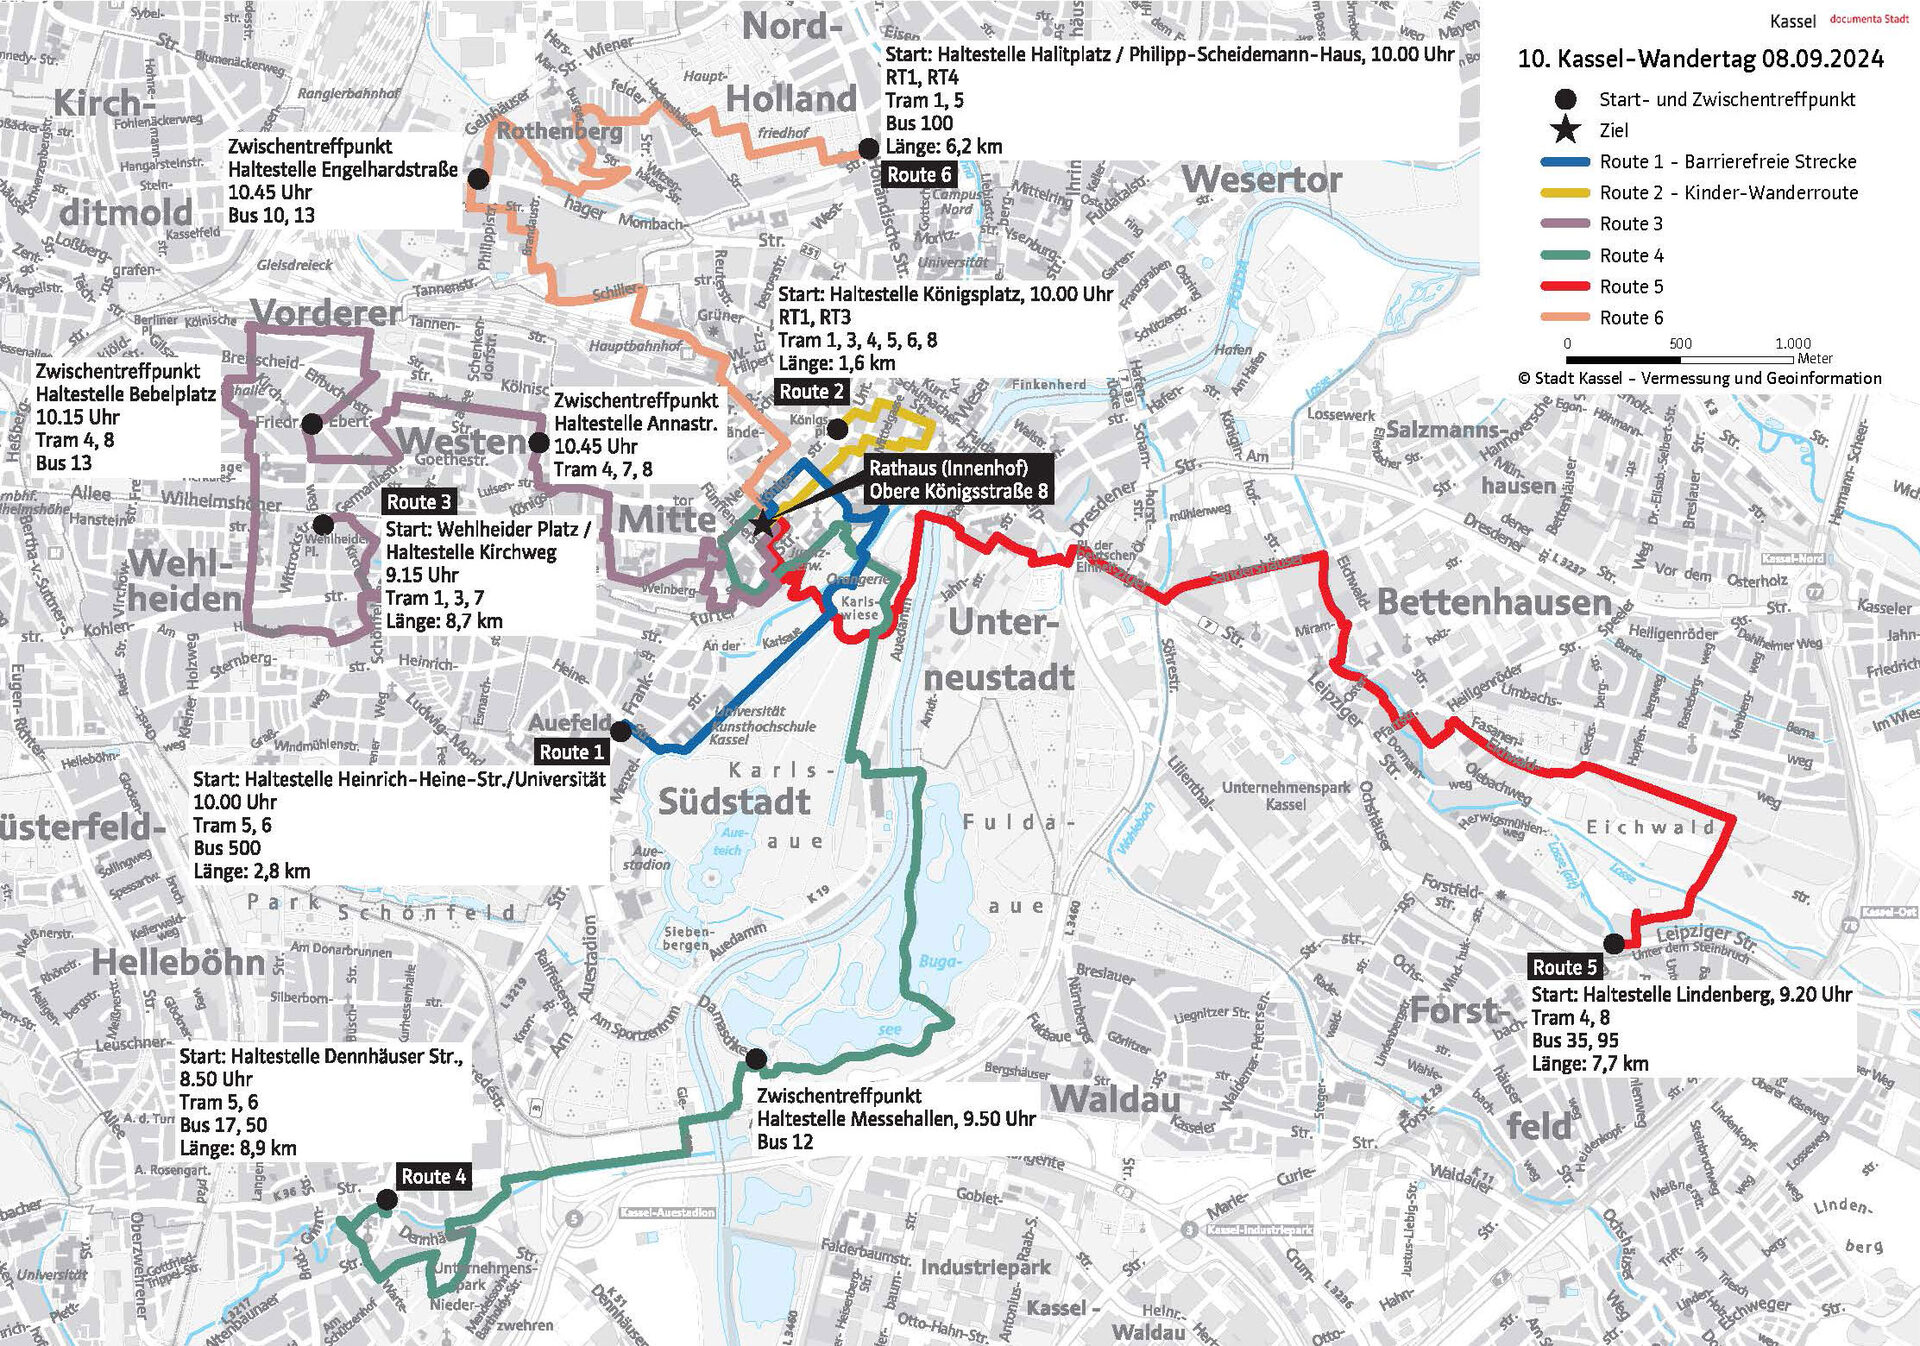 Routen des Kassel Wandertags 2024